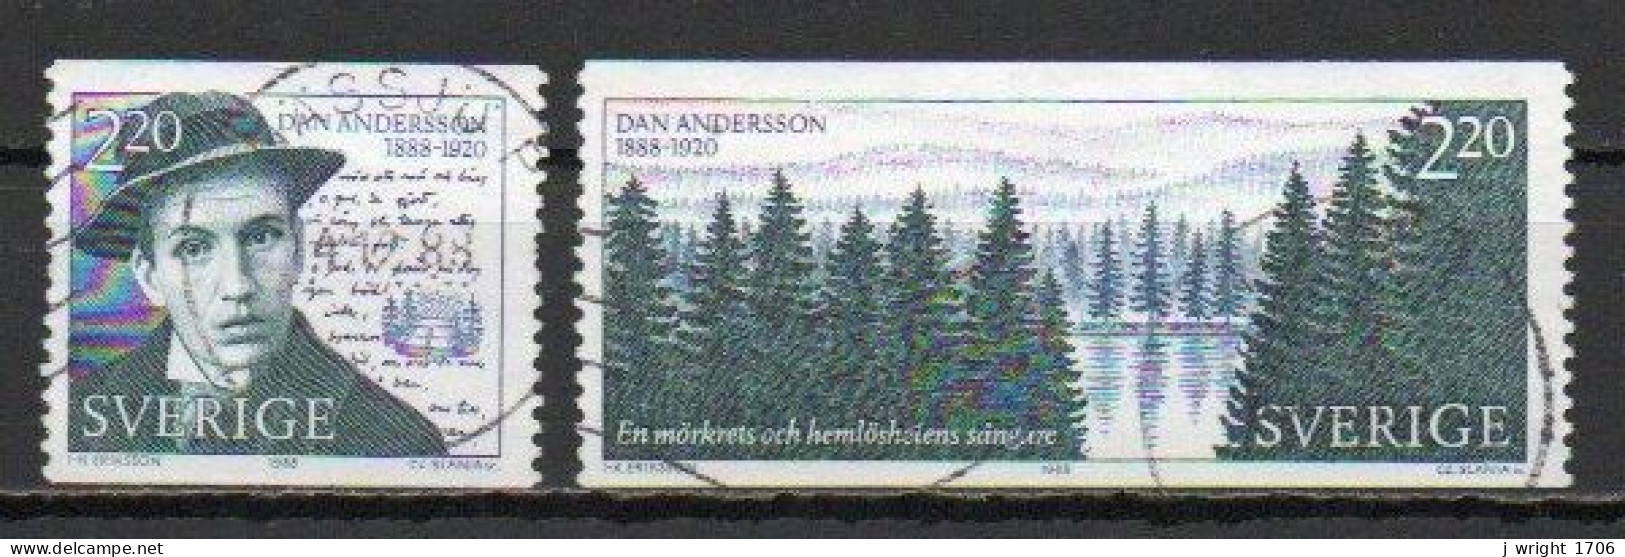 Sweden, 1988, Dan Andersson, Set, USED - Gebruikt